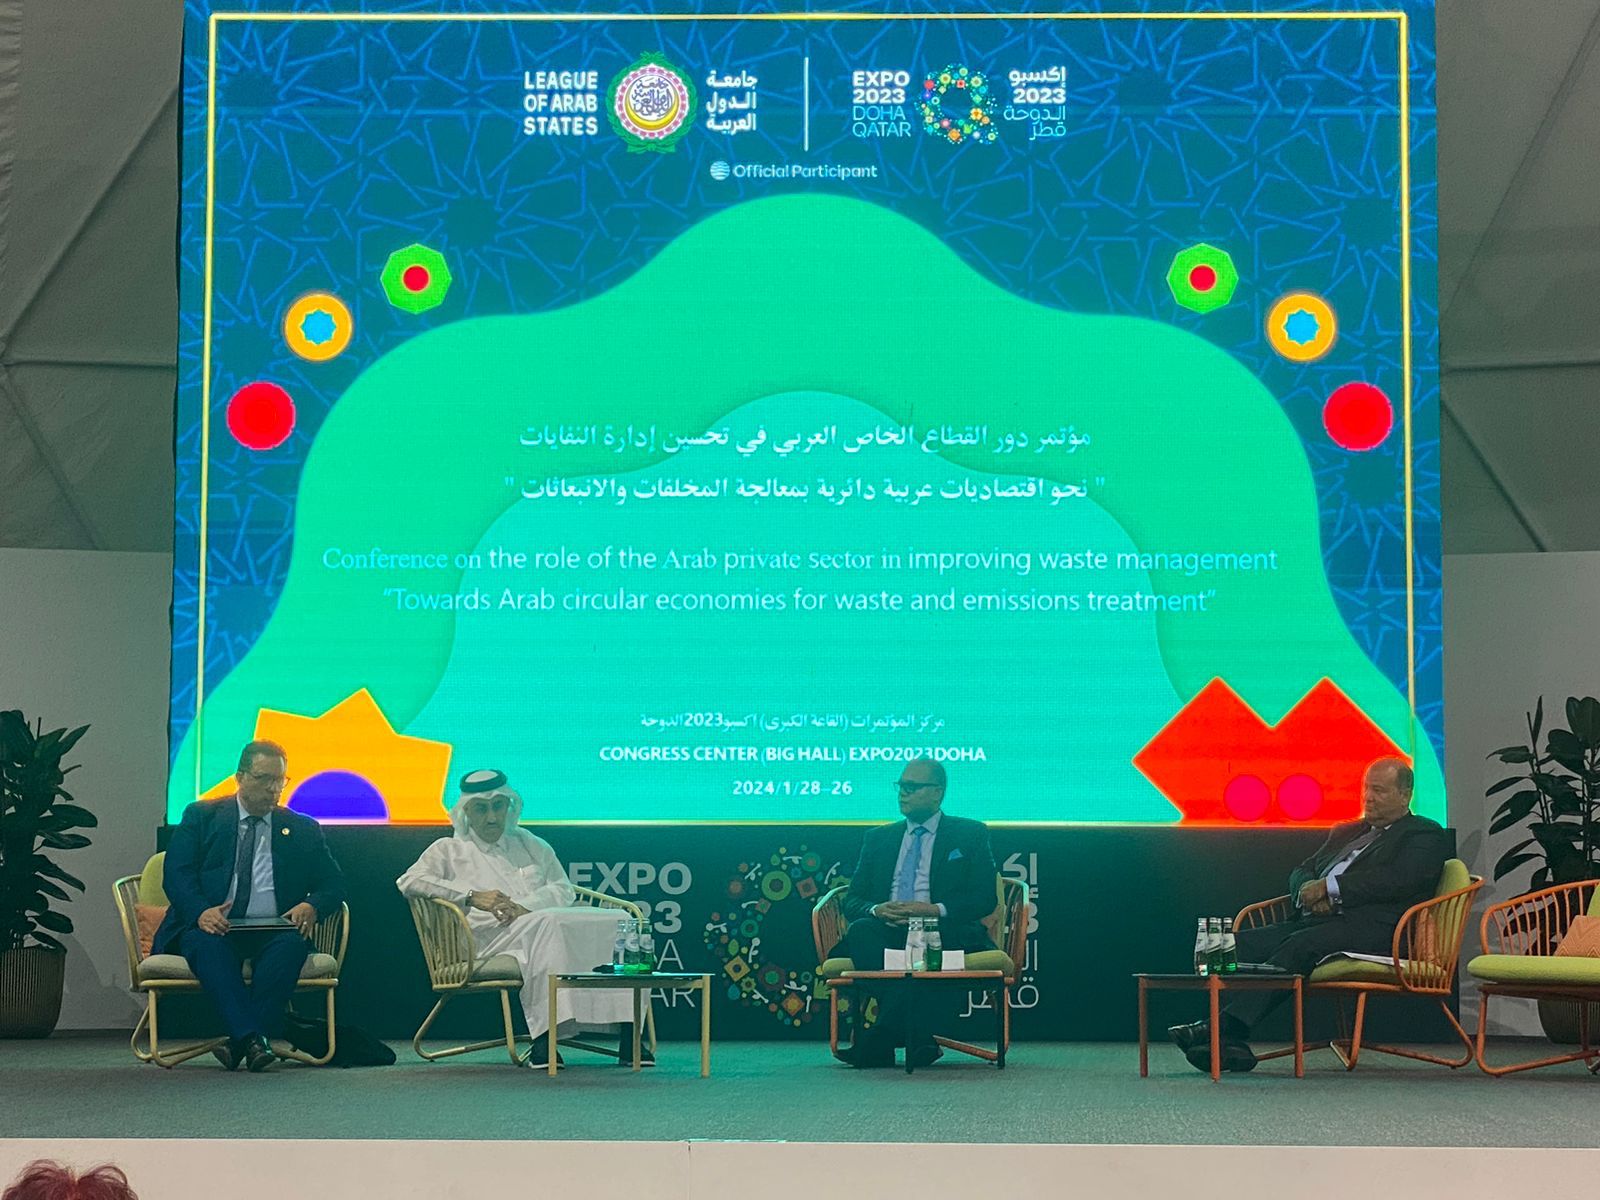 جامعة الدول العربية تعقد مؤتمر دور القطاع الخاص العربي في تحسين إدارة النفايات - موقع الموقع